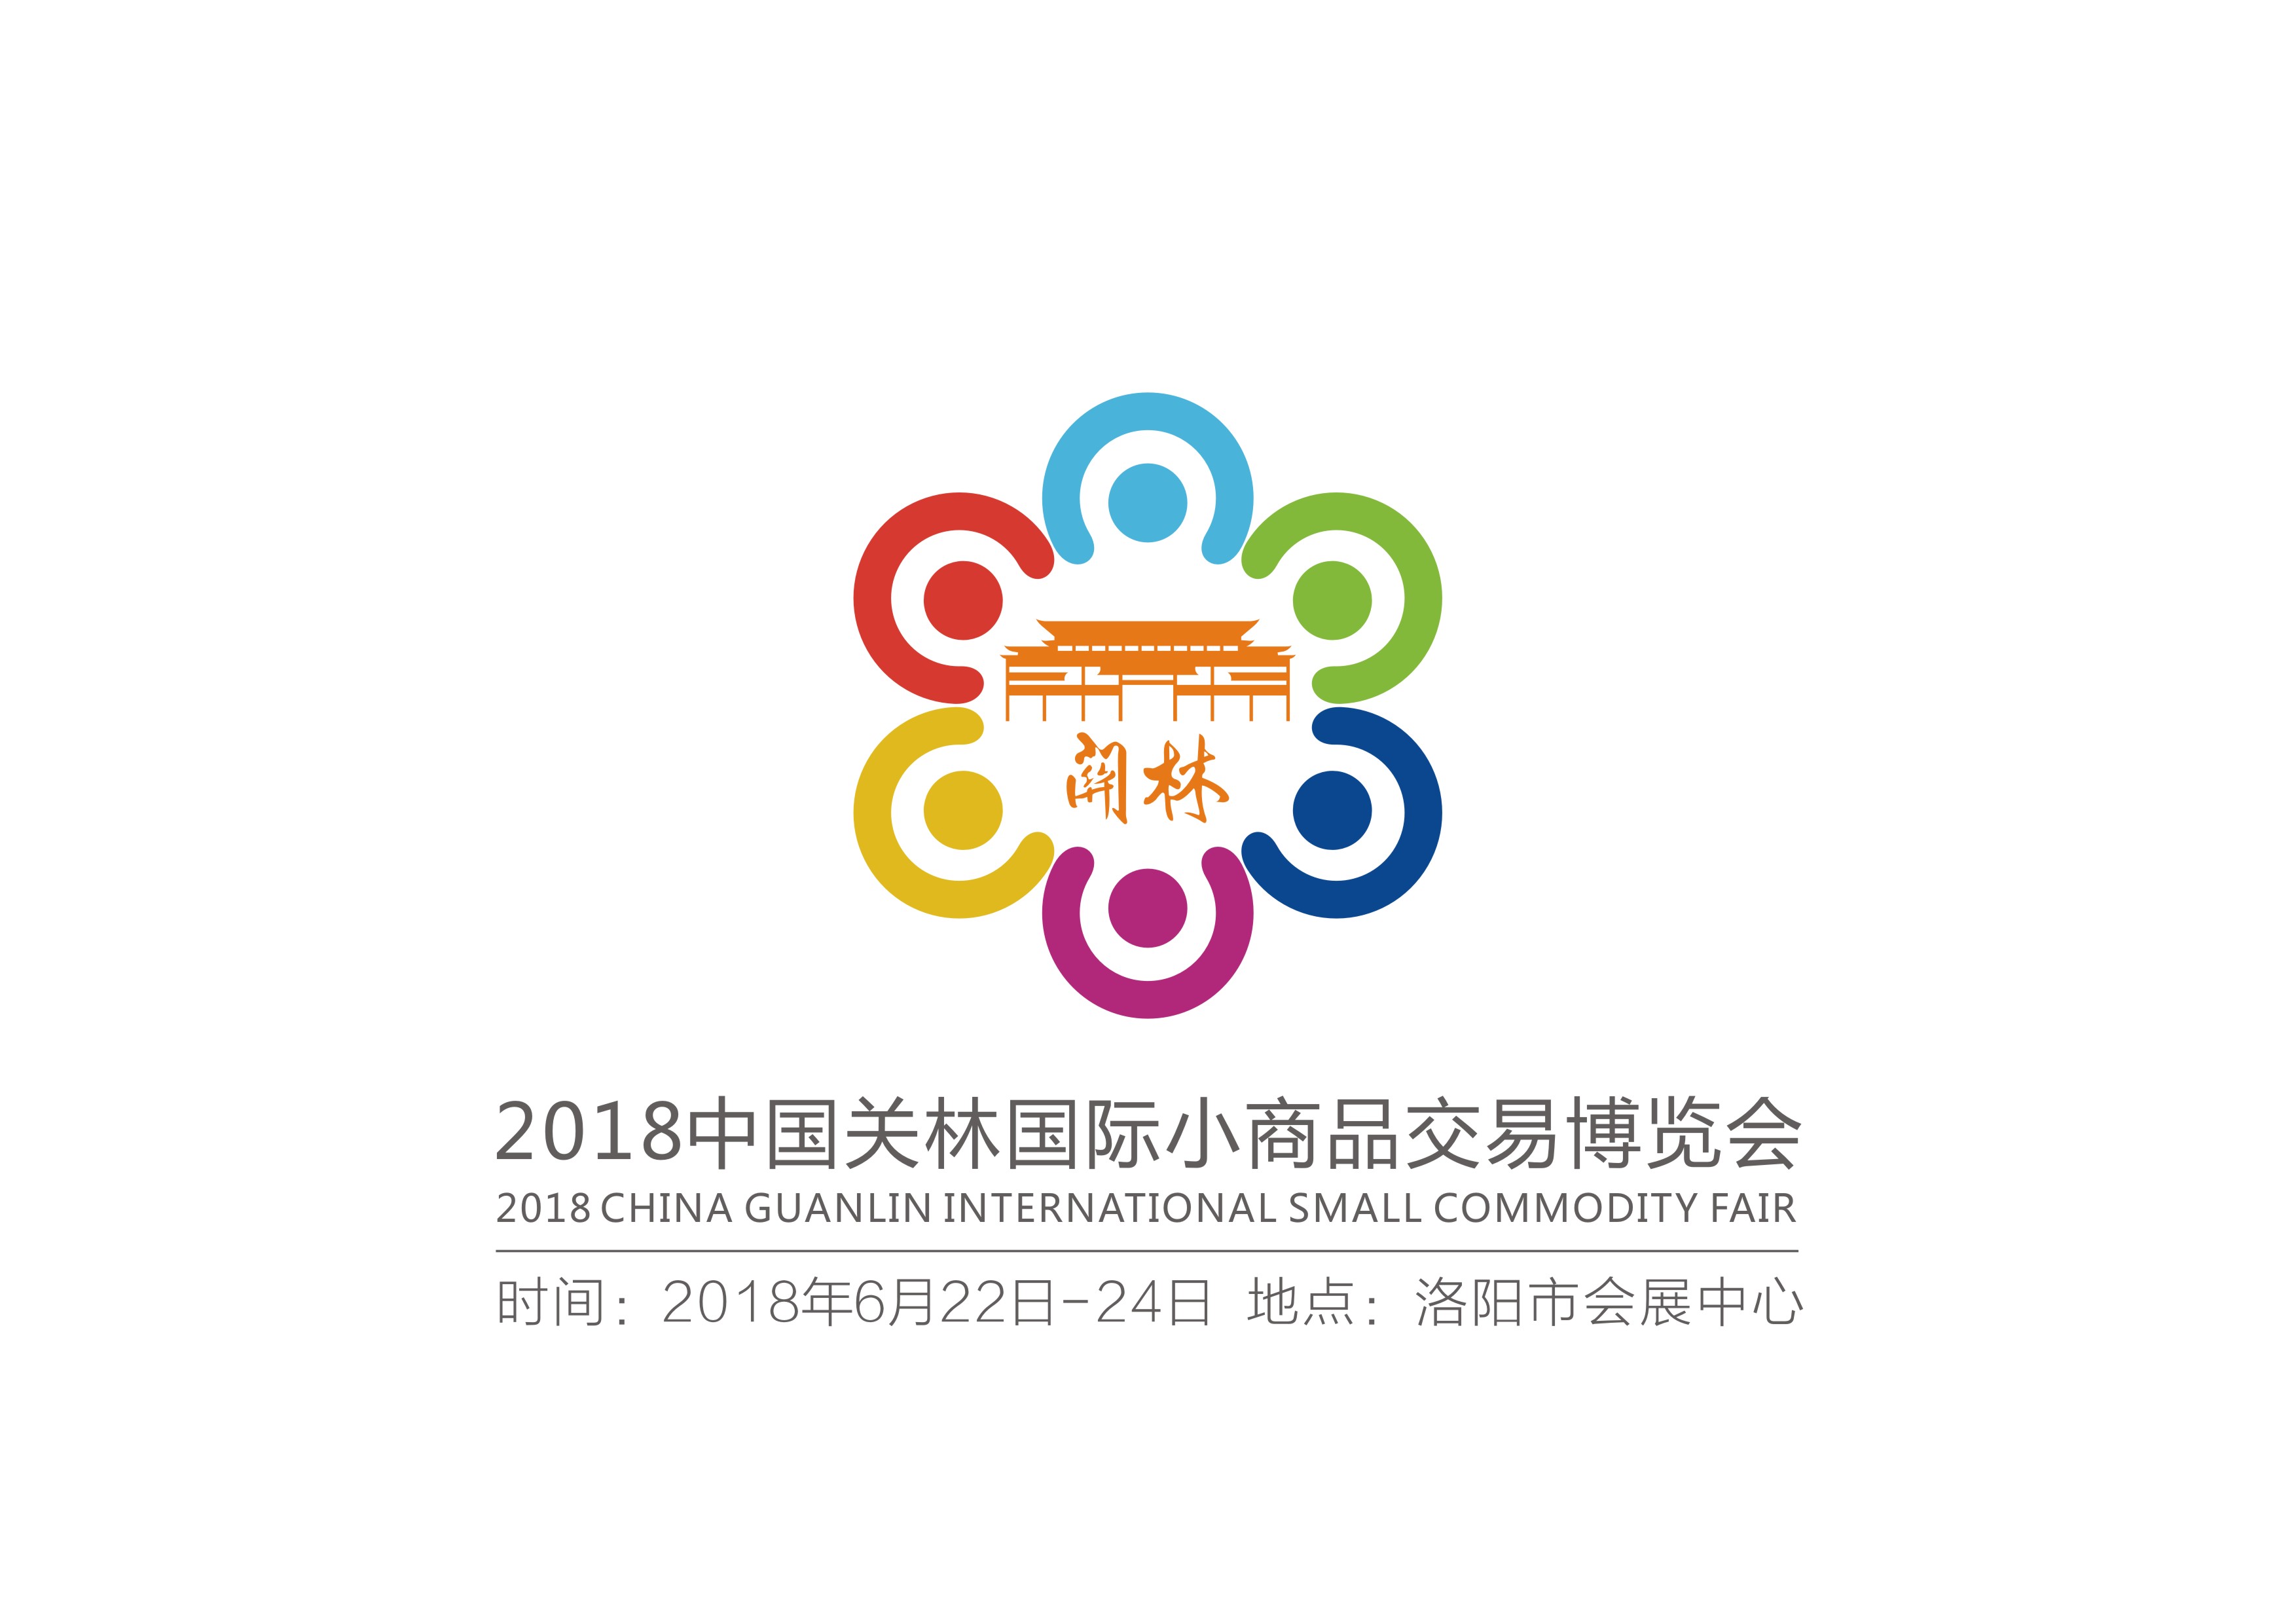 2018中国关林国际小商品交易博览会